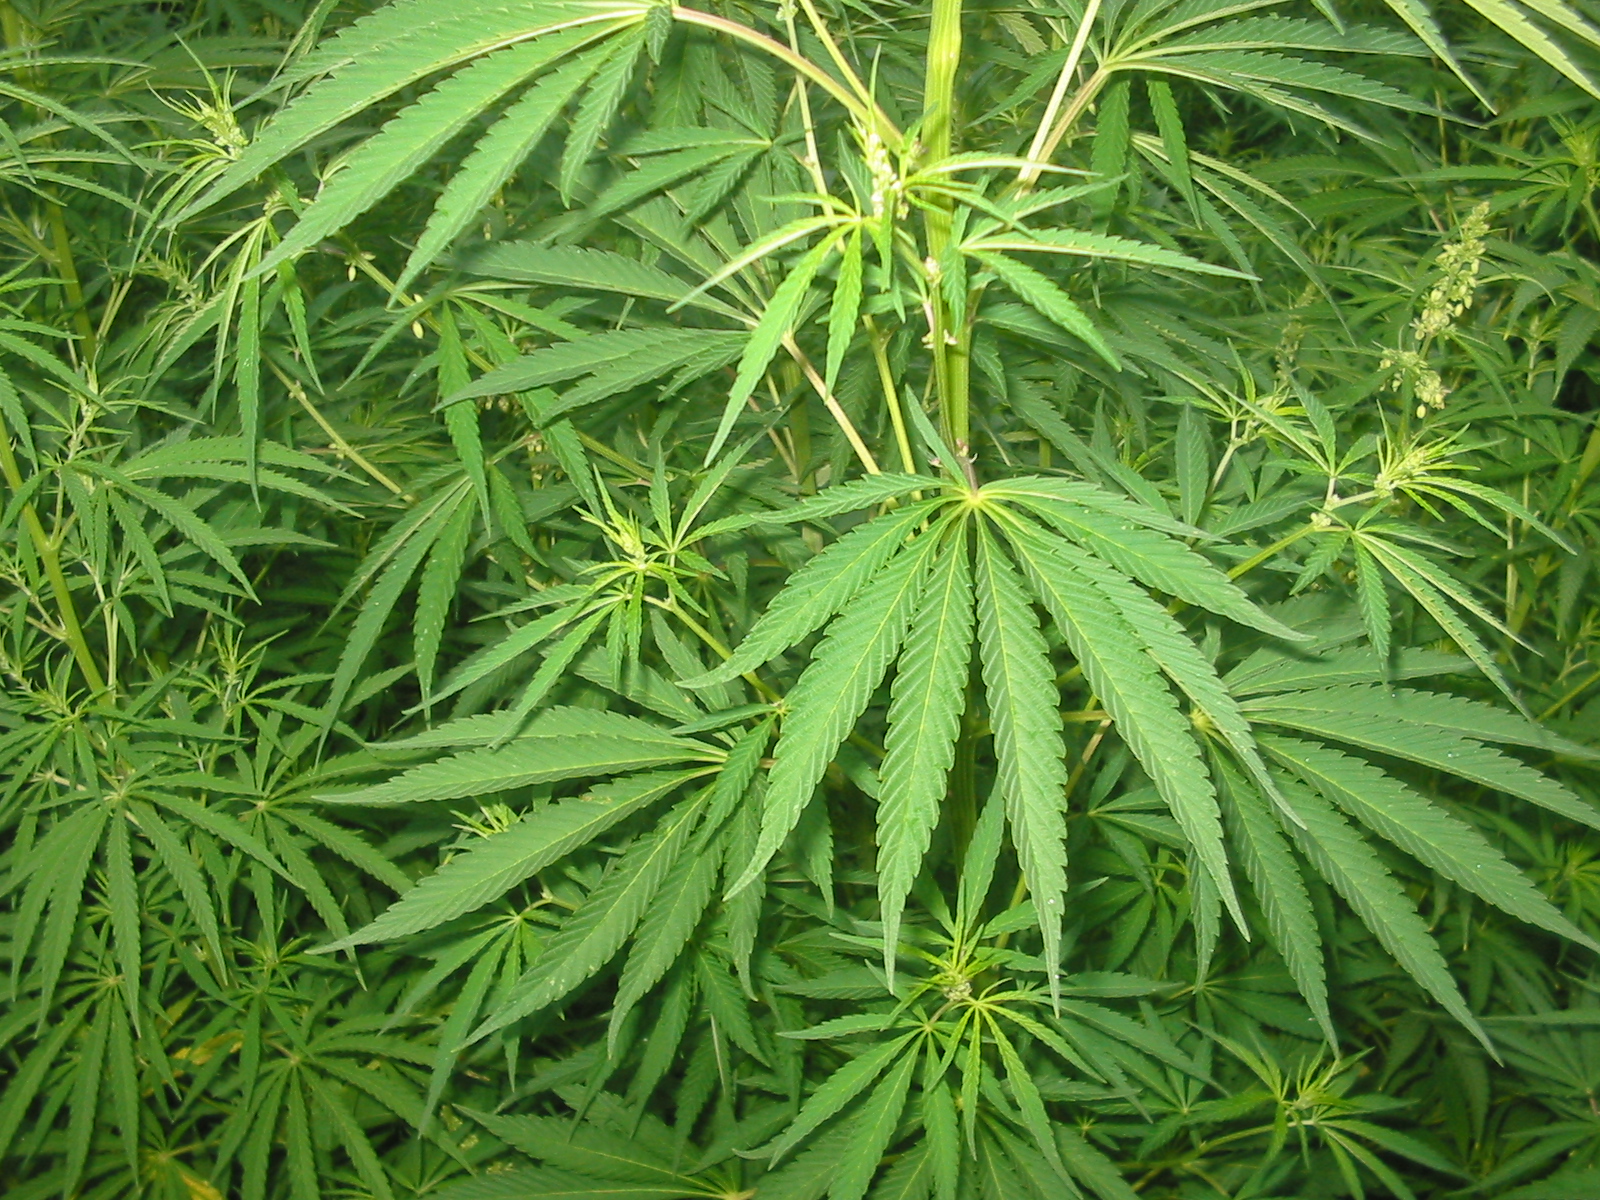 Agrumi e serre di cannabis, scoperta piantagione di droga - Live Sicilia